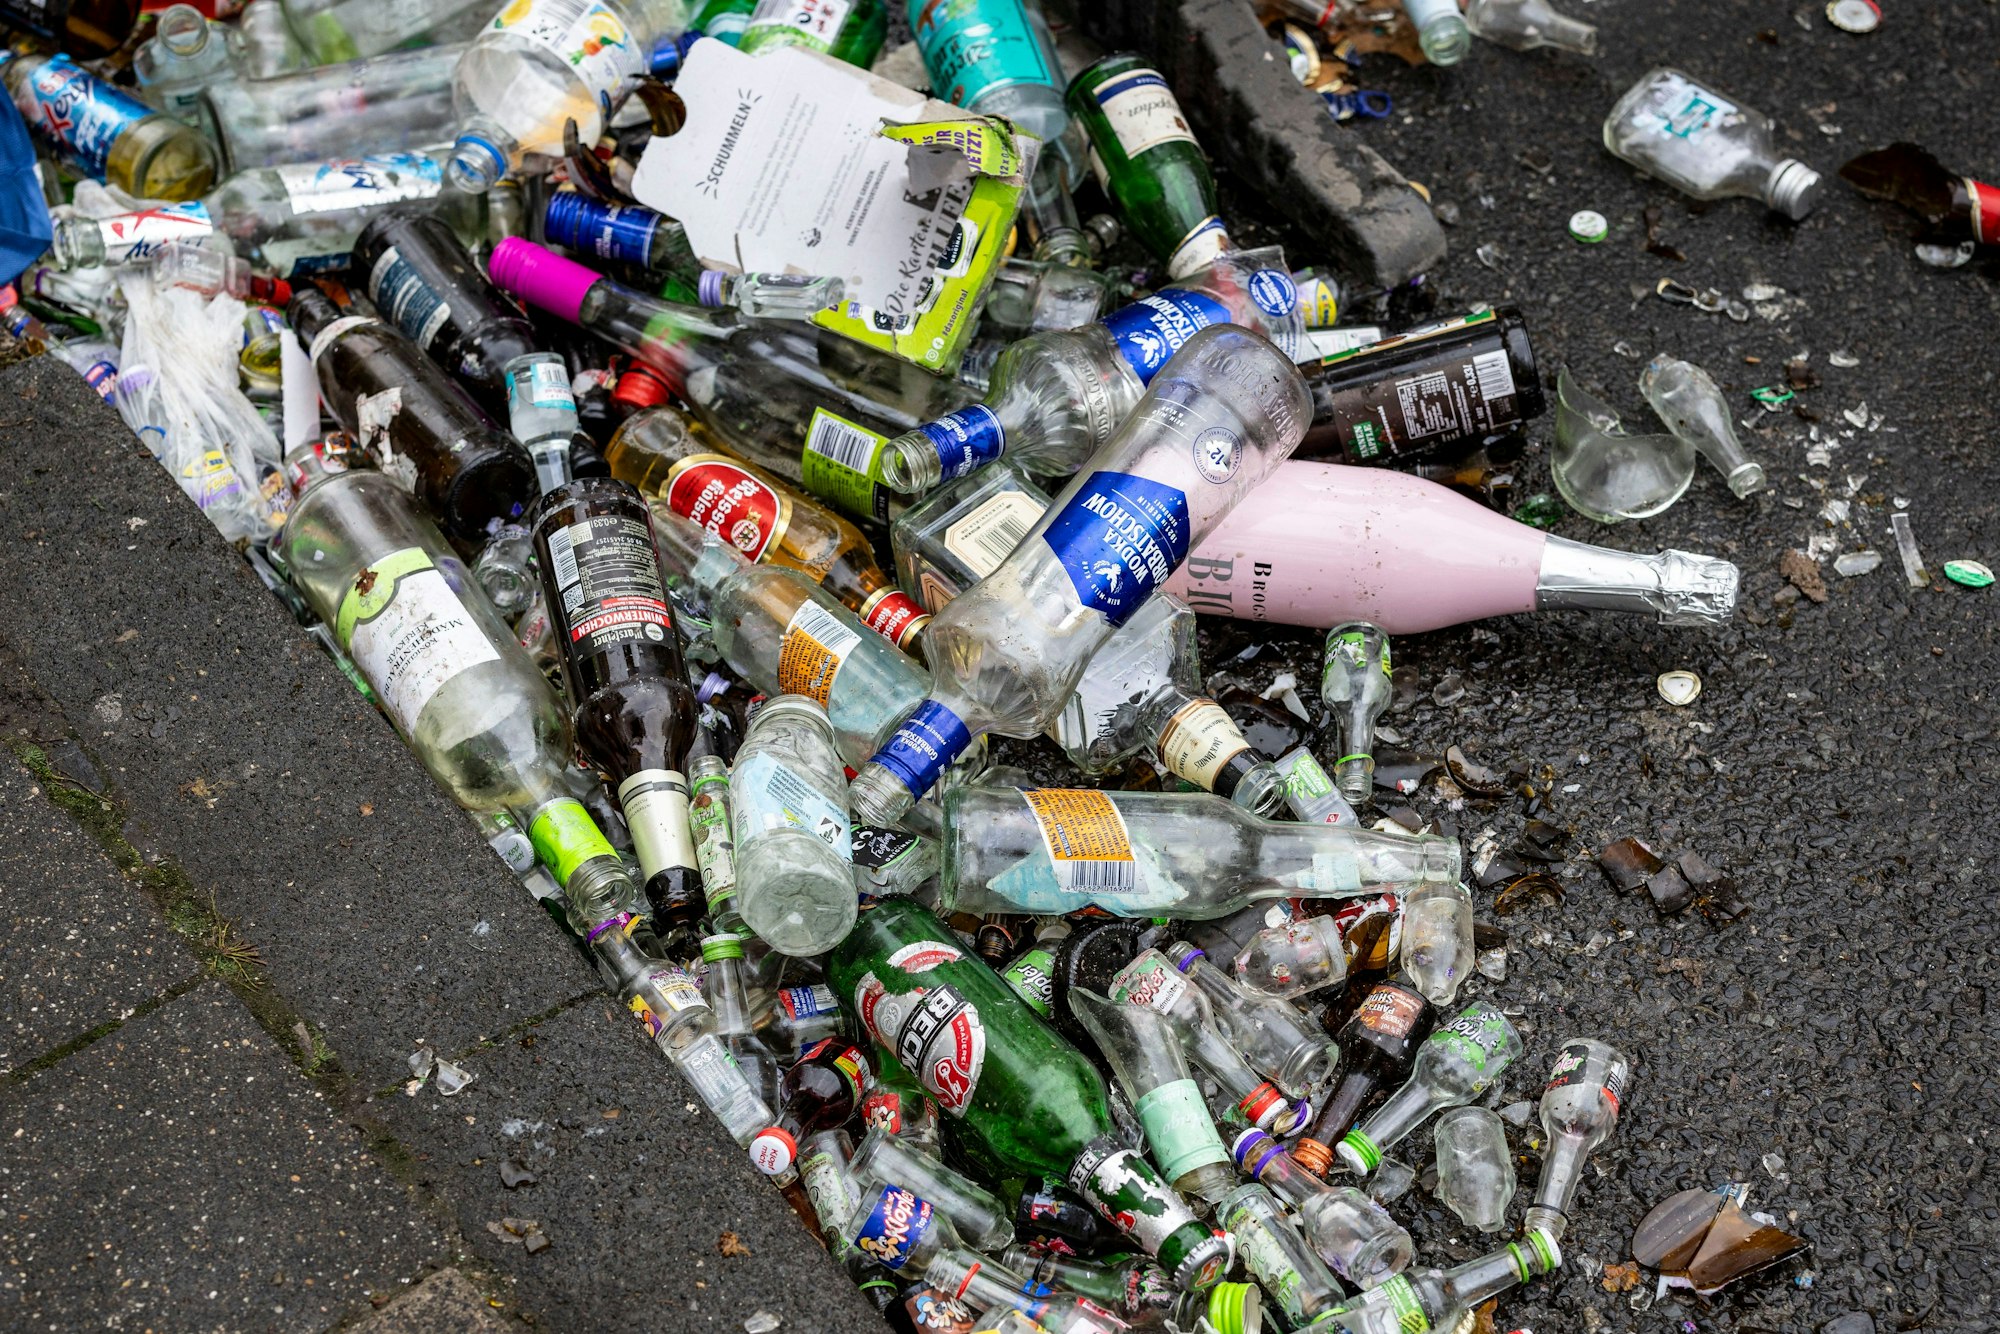 Glasflaschen und anderer Müll liegen vor dem Zugang zur Zülpicher Straße schon vor dem offiziellen Start der Karnevalssaison am 11.11. um 11:11 Uhr.